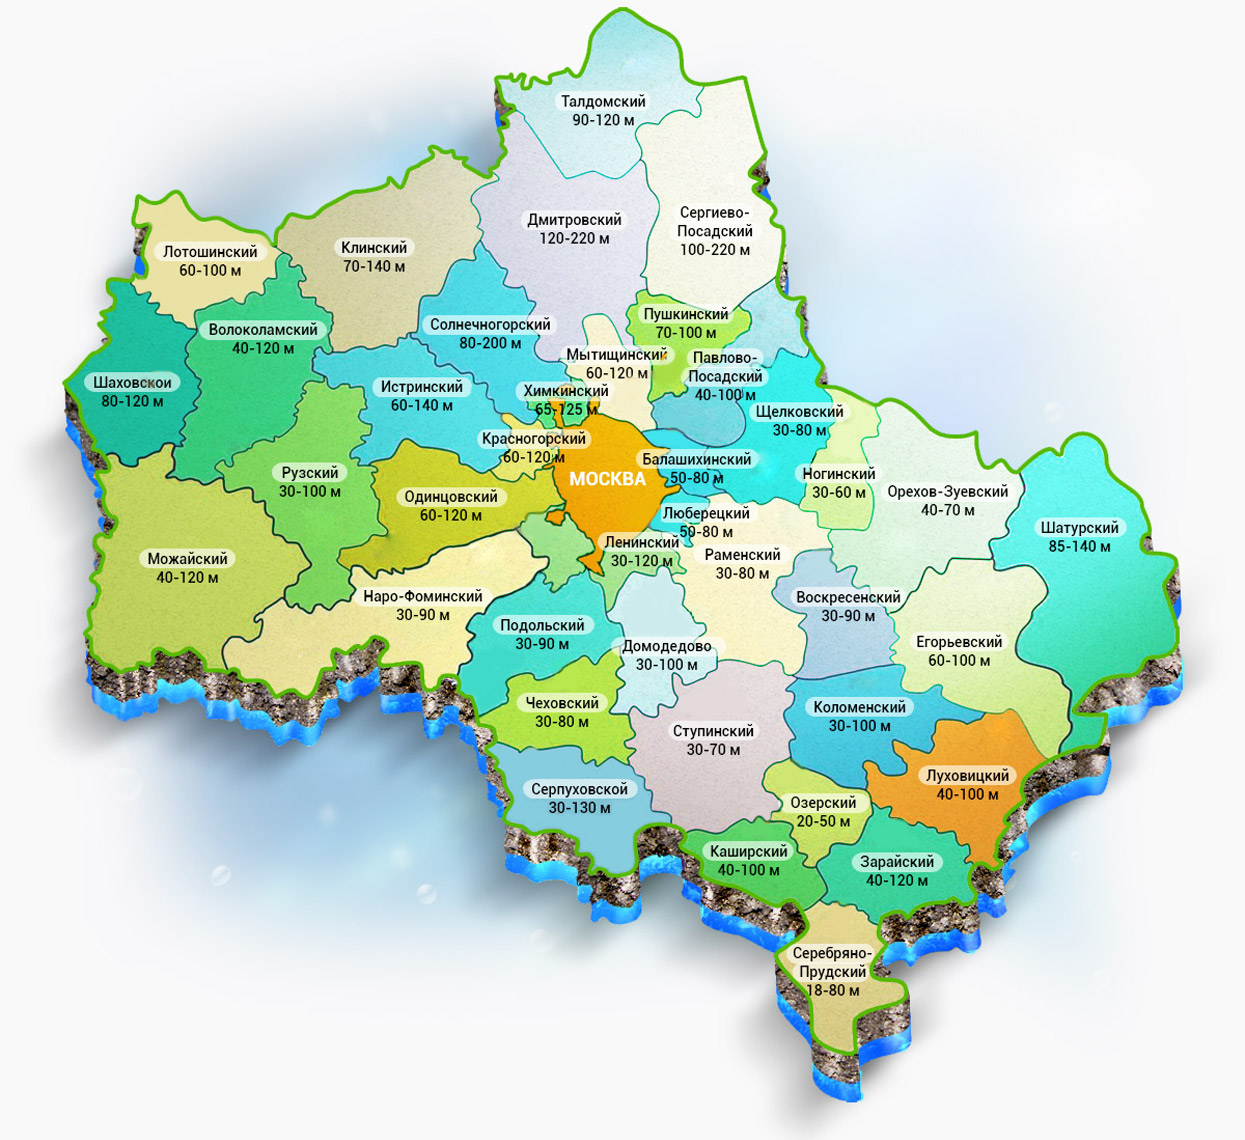 Карта глубин артезианских скважин Московской области